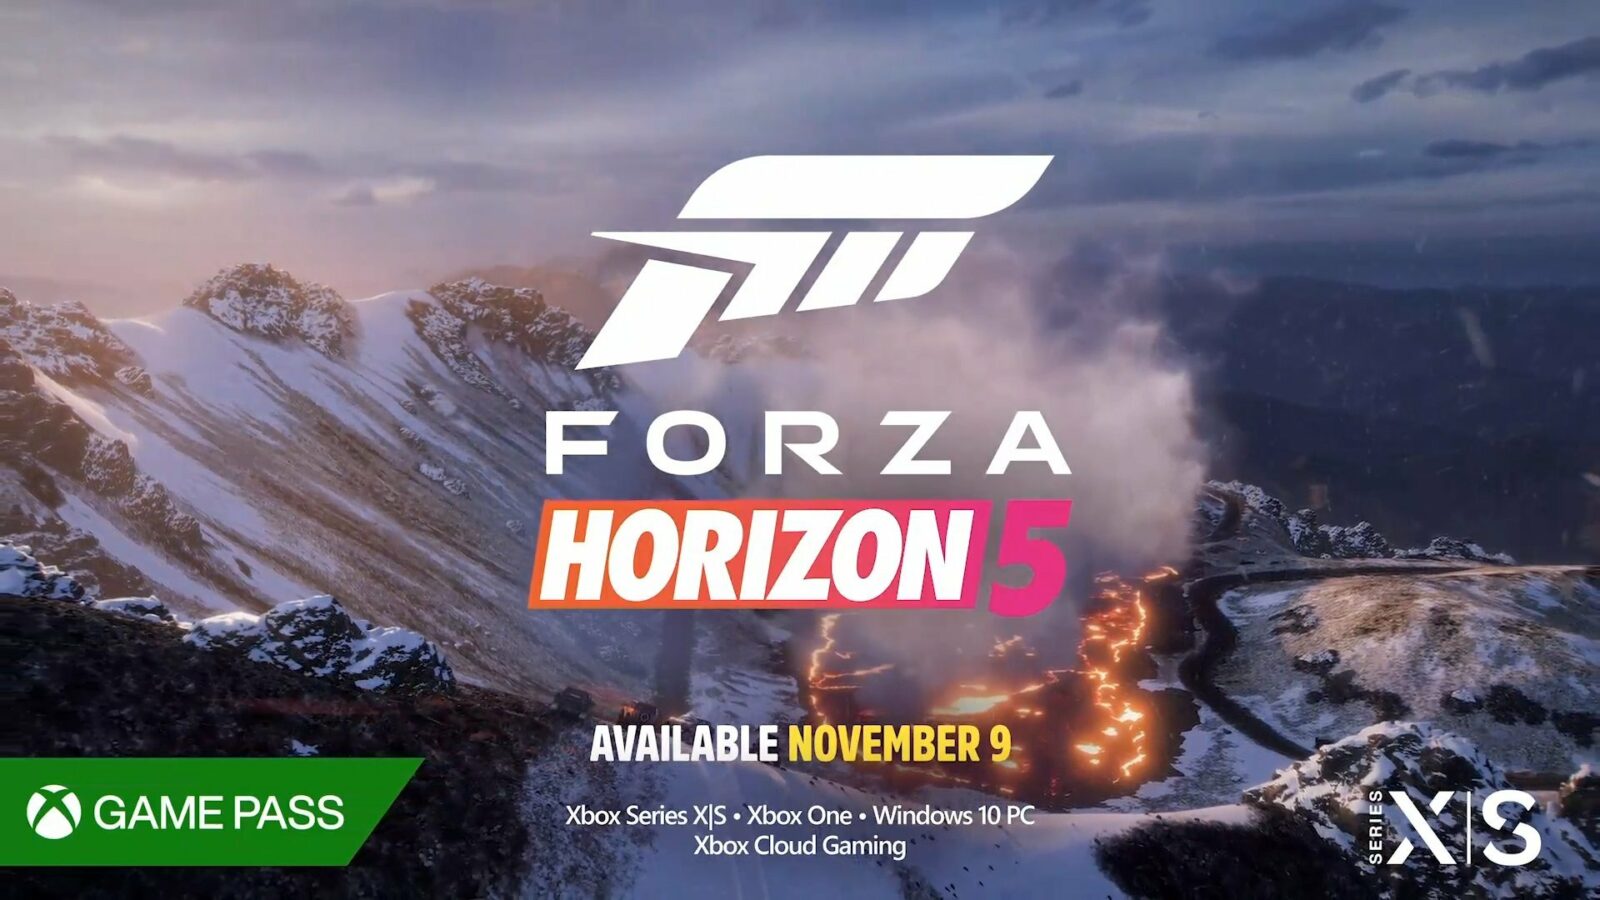 Is Forza Horizon free on PC?